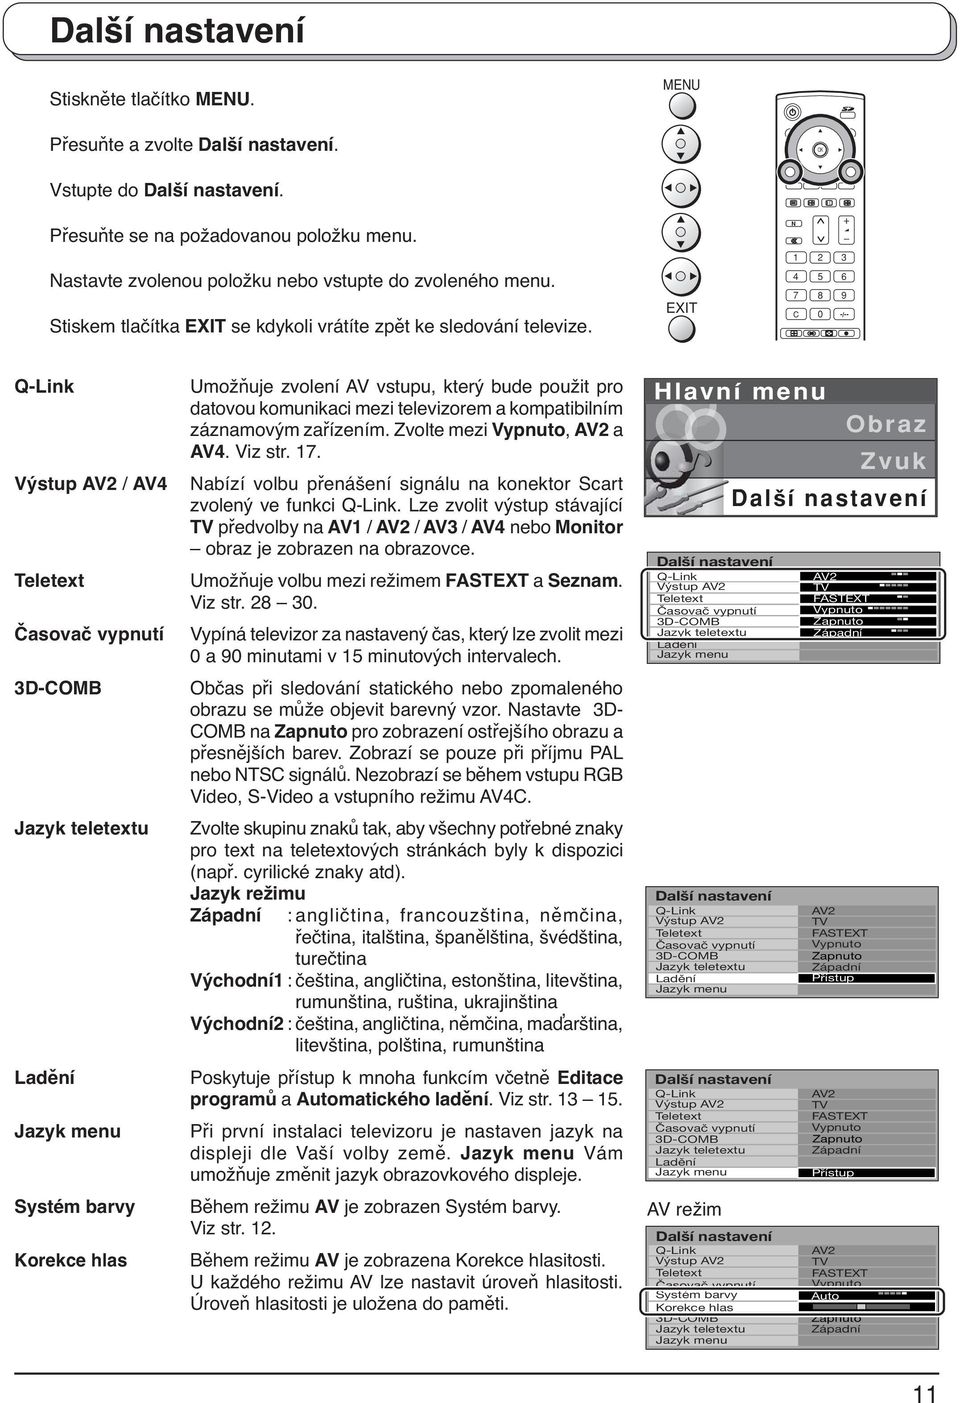 EXIT Q-Link Výstup AV2 / AV4 Teletext Časovač vypnutí 3D-COMB Jazyk teletextu Ladění Jazyk menu Systém barvy Korekce hlas Umožňuje zvolení AV vstupu, který bude použit pro datovou komunikaci mezi